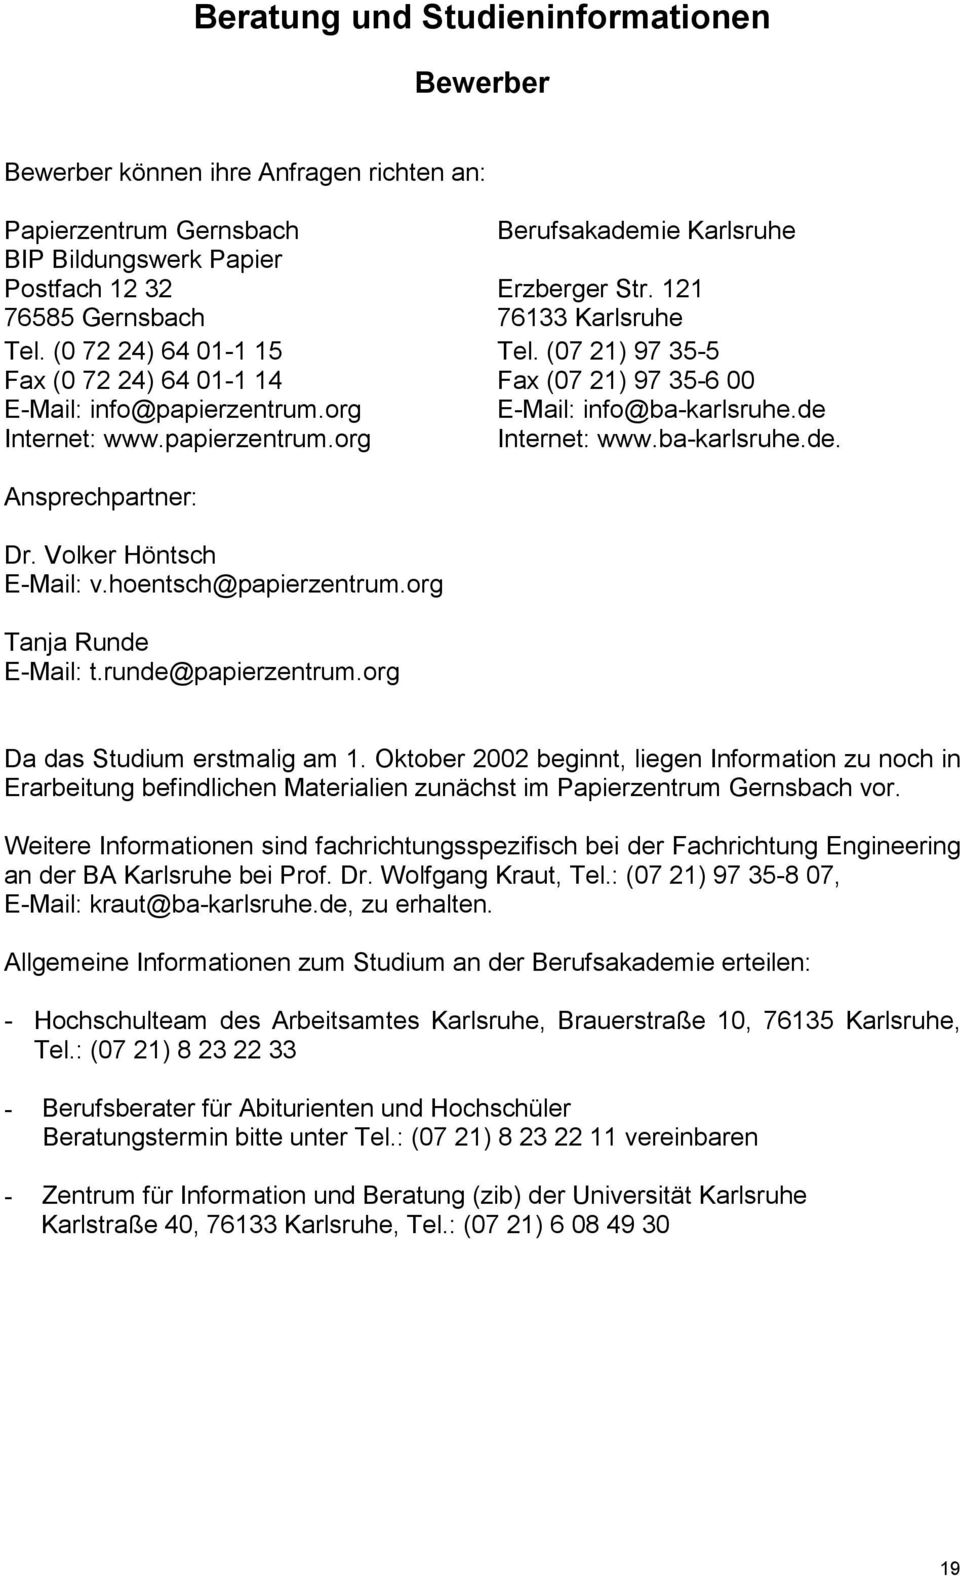 (07 21) 97 35-5 Fax (07 21) 97 35-6 00 E-Mail: info@ba-karlsruhe.de Internet: www.ba-karlsruhe.de. Ansprechpartner: Dr. Volker Höntsch E-Mail: v.hoentsch@papierzentrum.org Tanja Runde E-Mail: t.